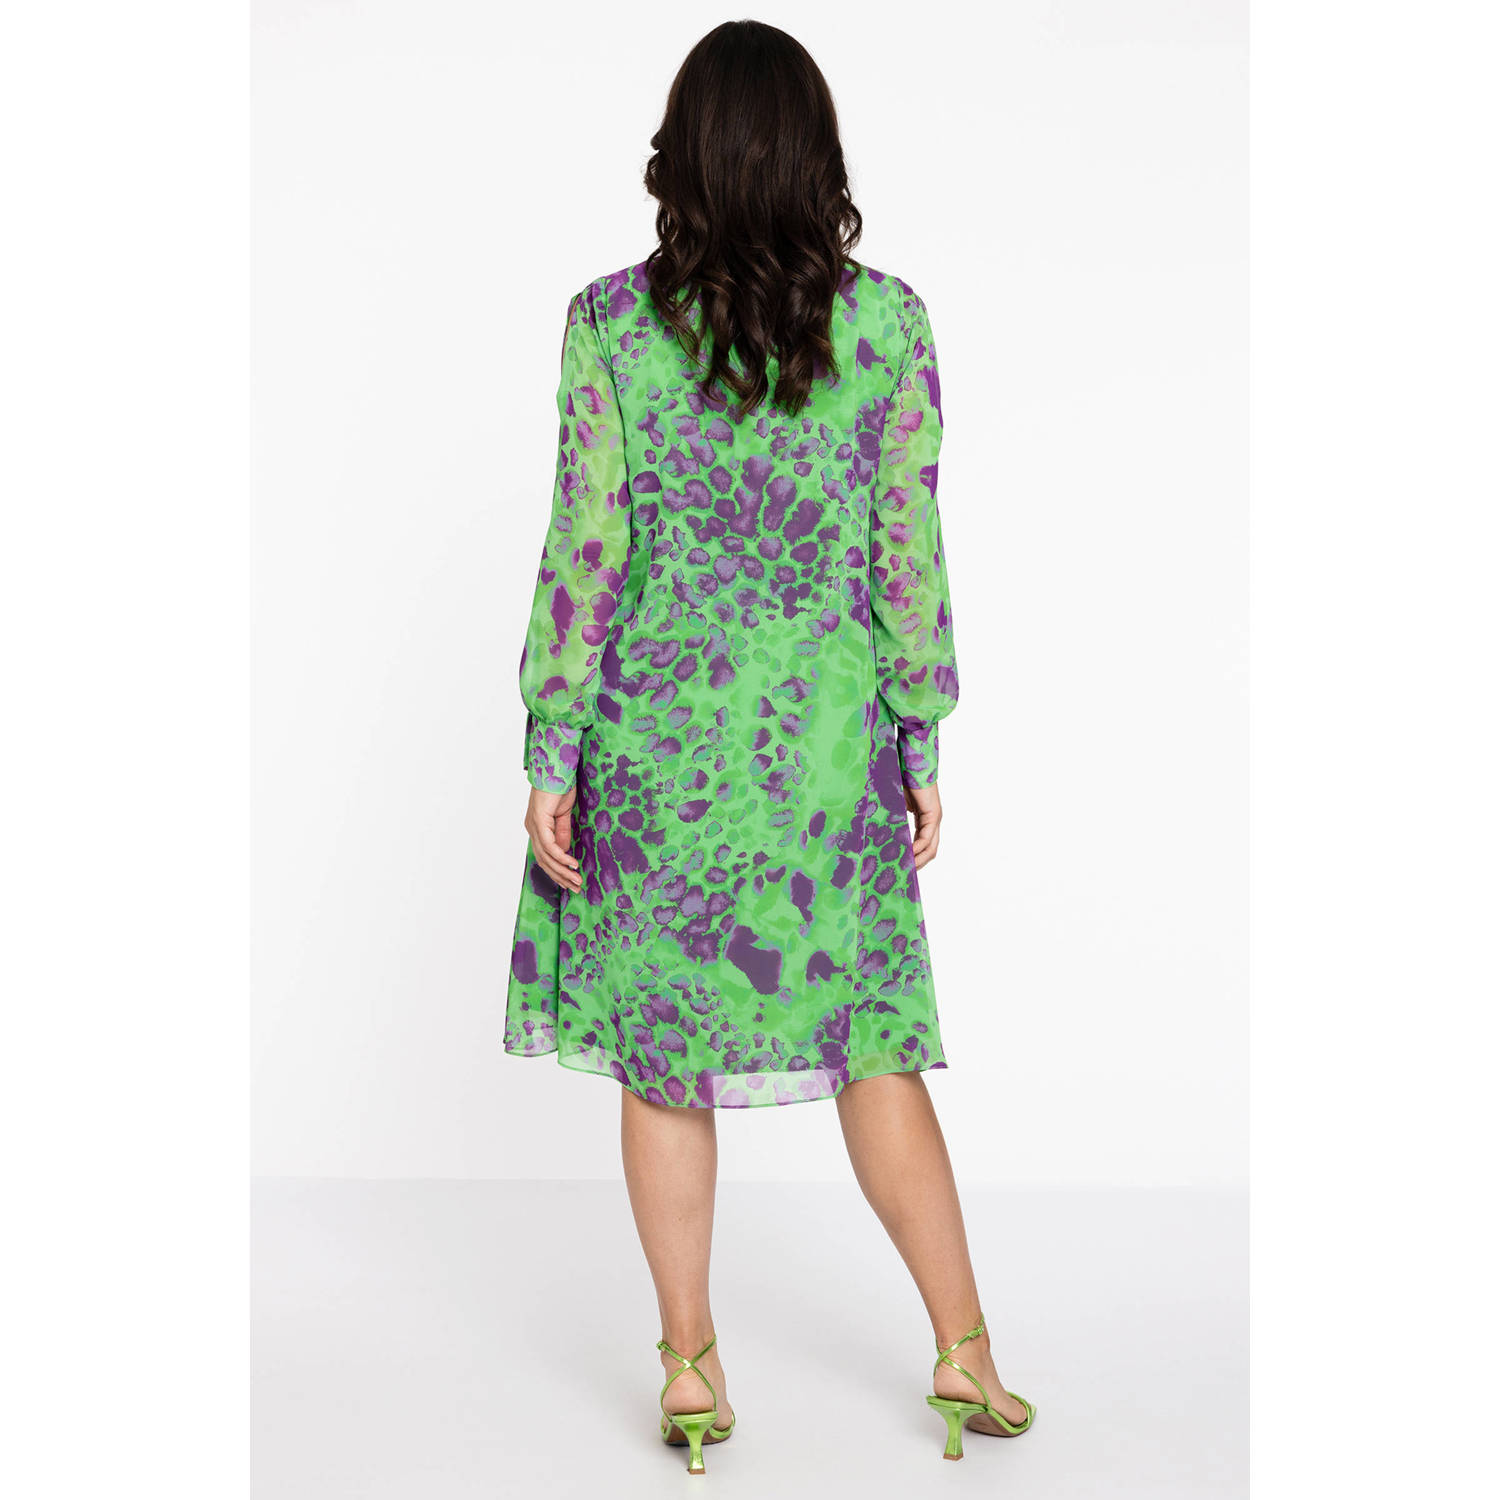 Yoek A-lijn jurk met all over print groen paars